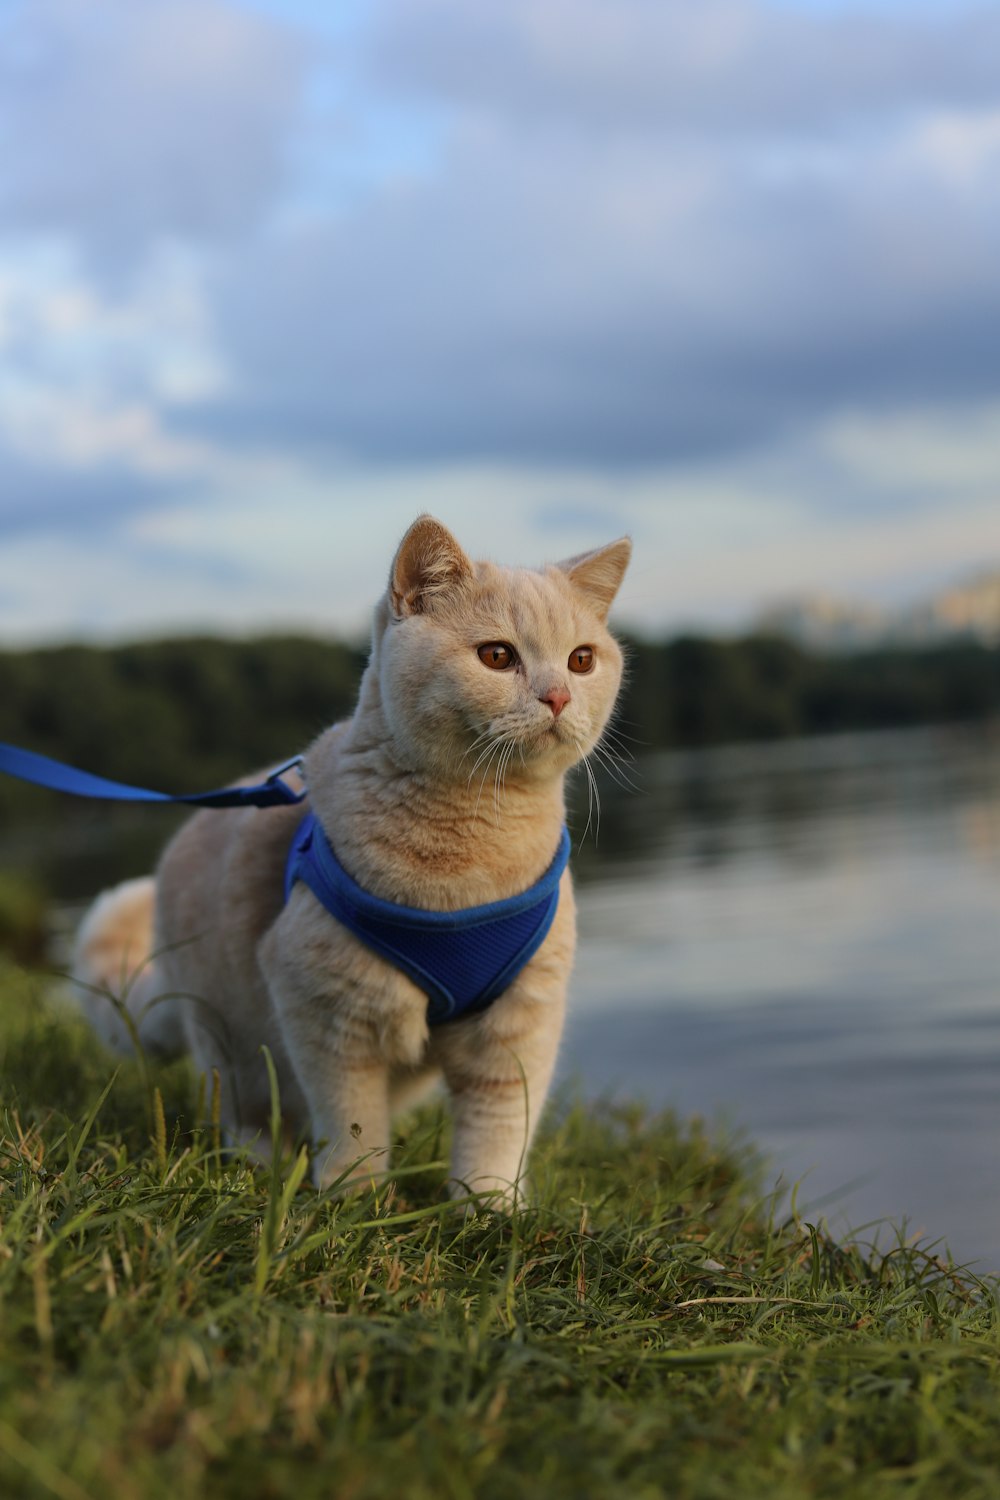 水辺の草の上を歩くひもを持った猫